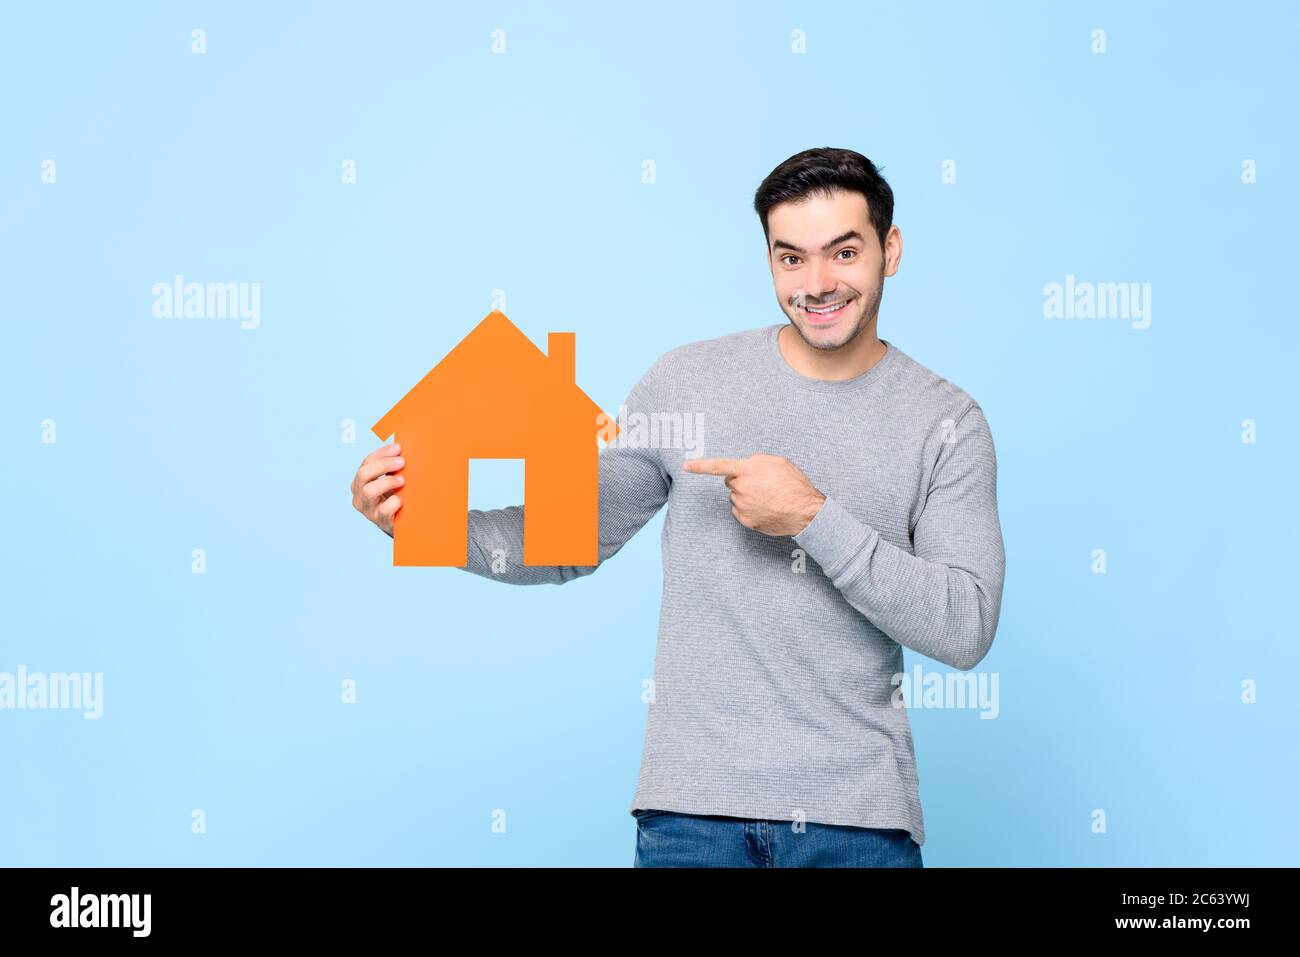 Lächelnder kaukasischer Mann hält und poiting zum Haus Ausschnitt Modell isoliert auf hellblauem Hintergrund Stockfoto